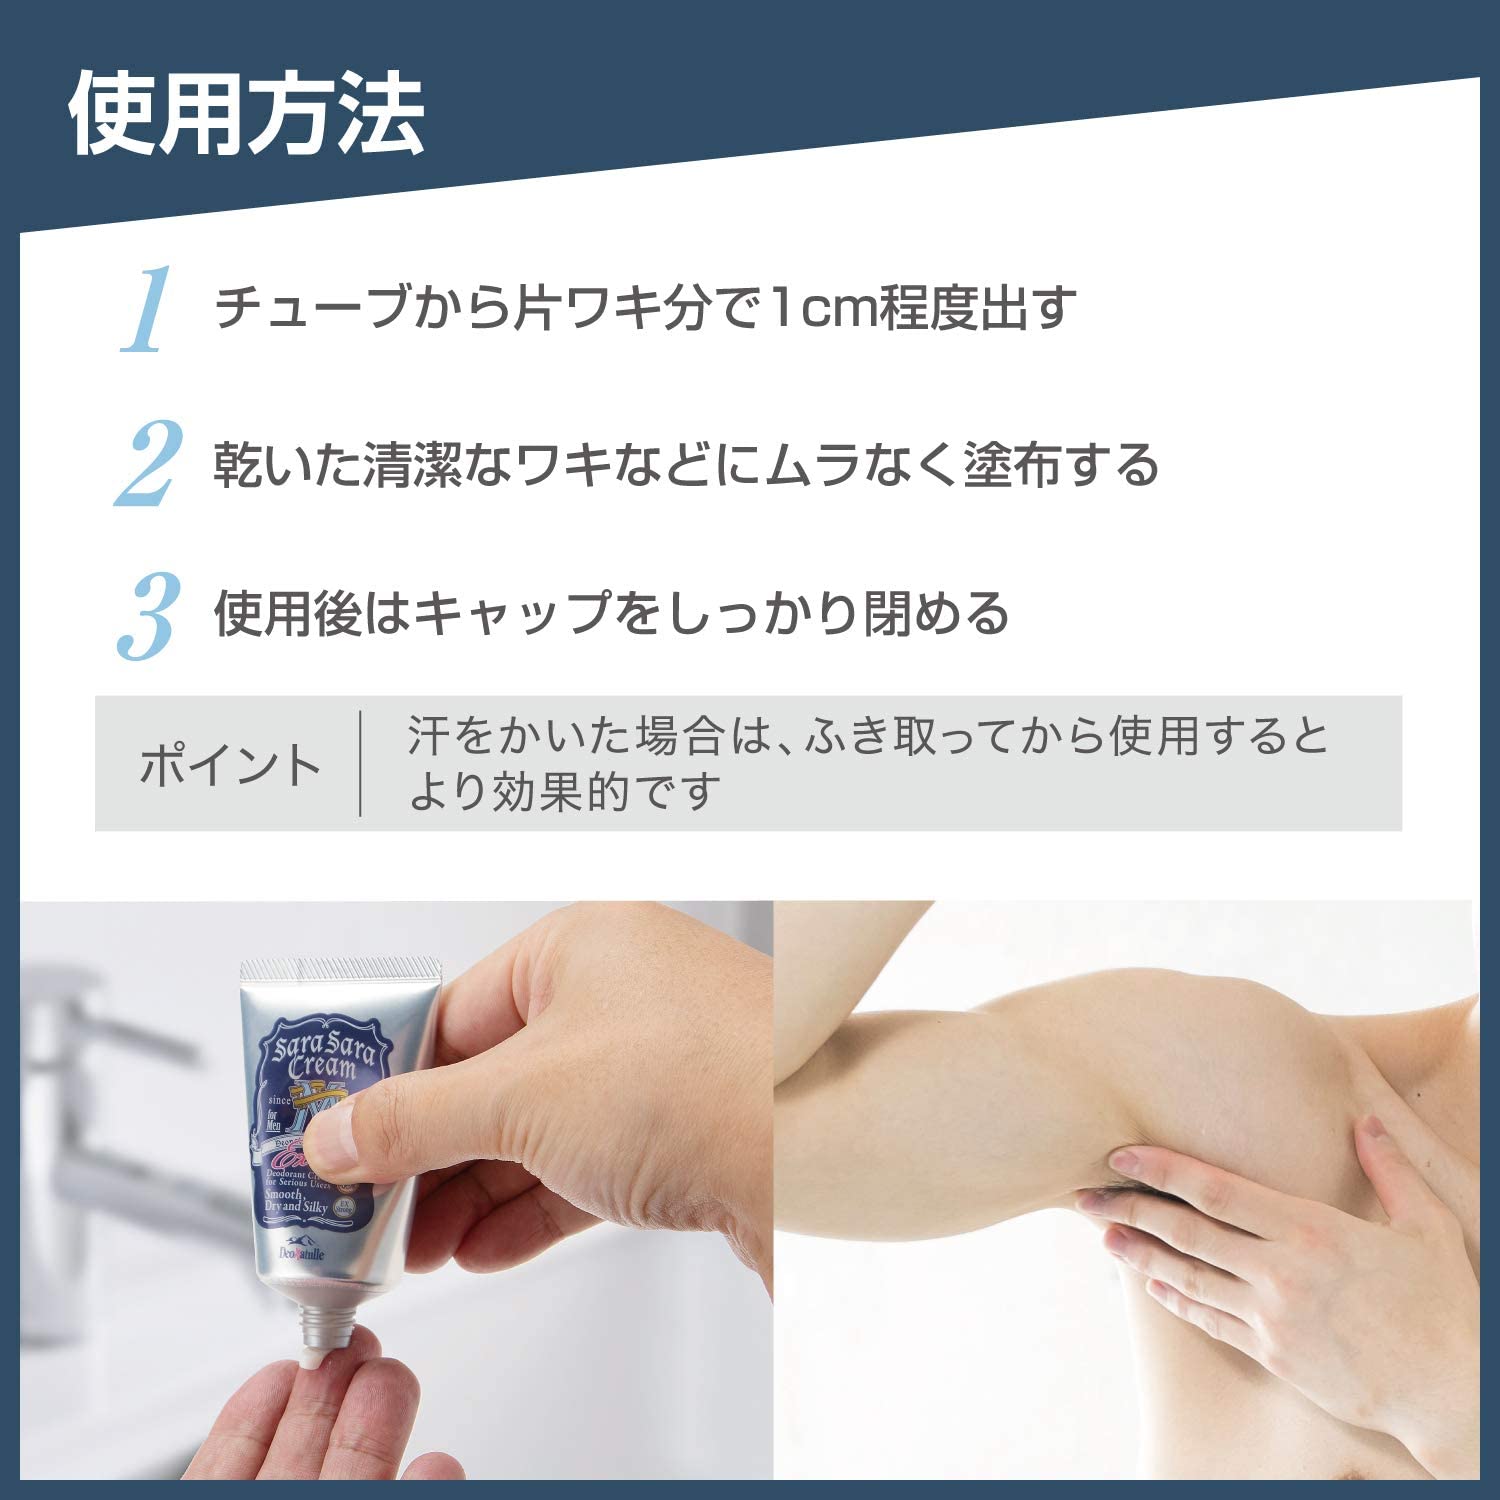 Deonatulle Mens Armpit Medicated Sarasara Cream Type - 45g - NihonMura